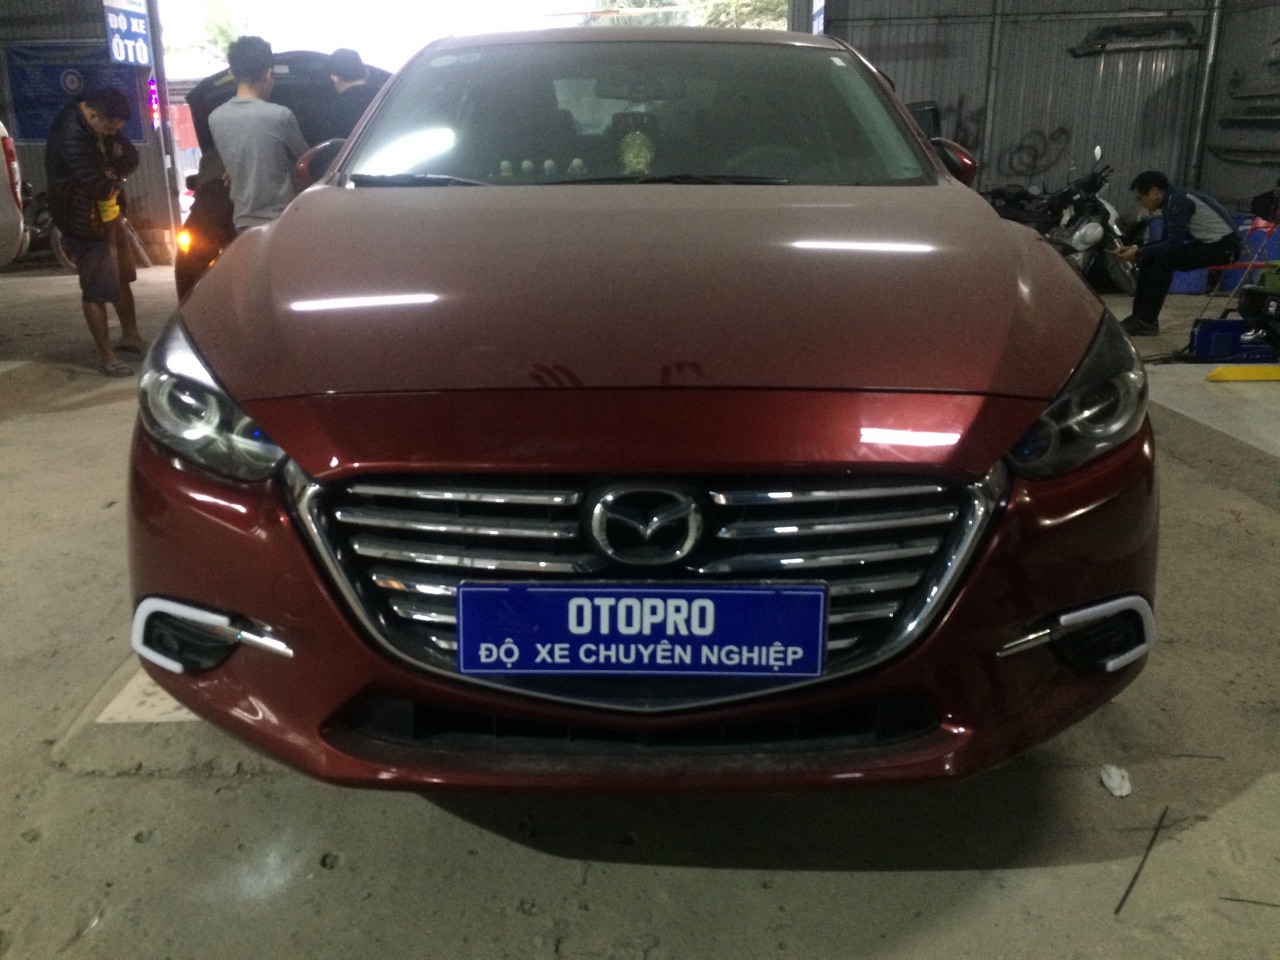 Mazda 3 2017 độ bi pha led mí khối mắt quỷ, mí gầm